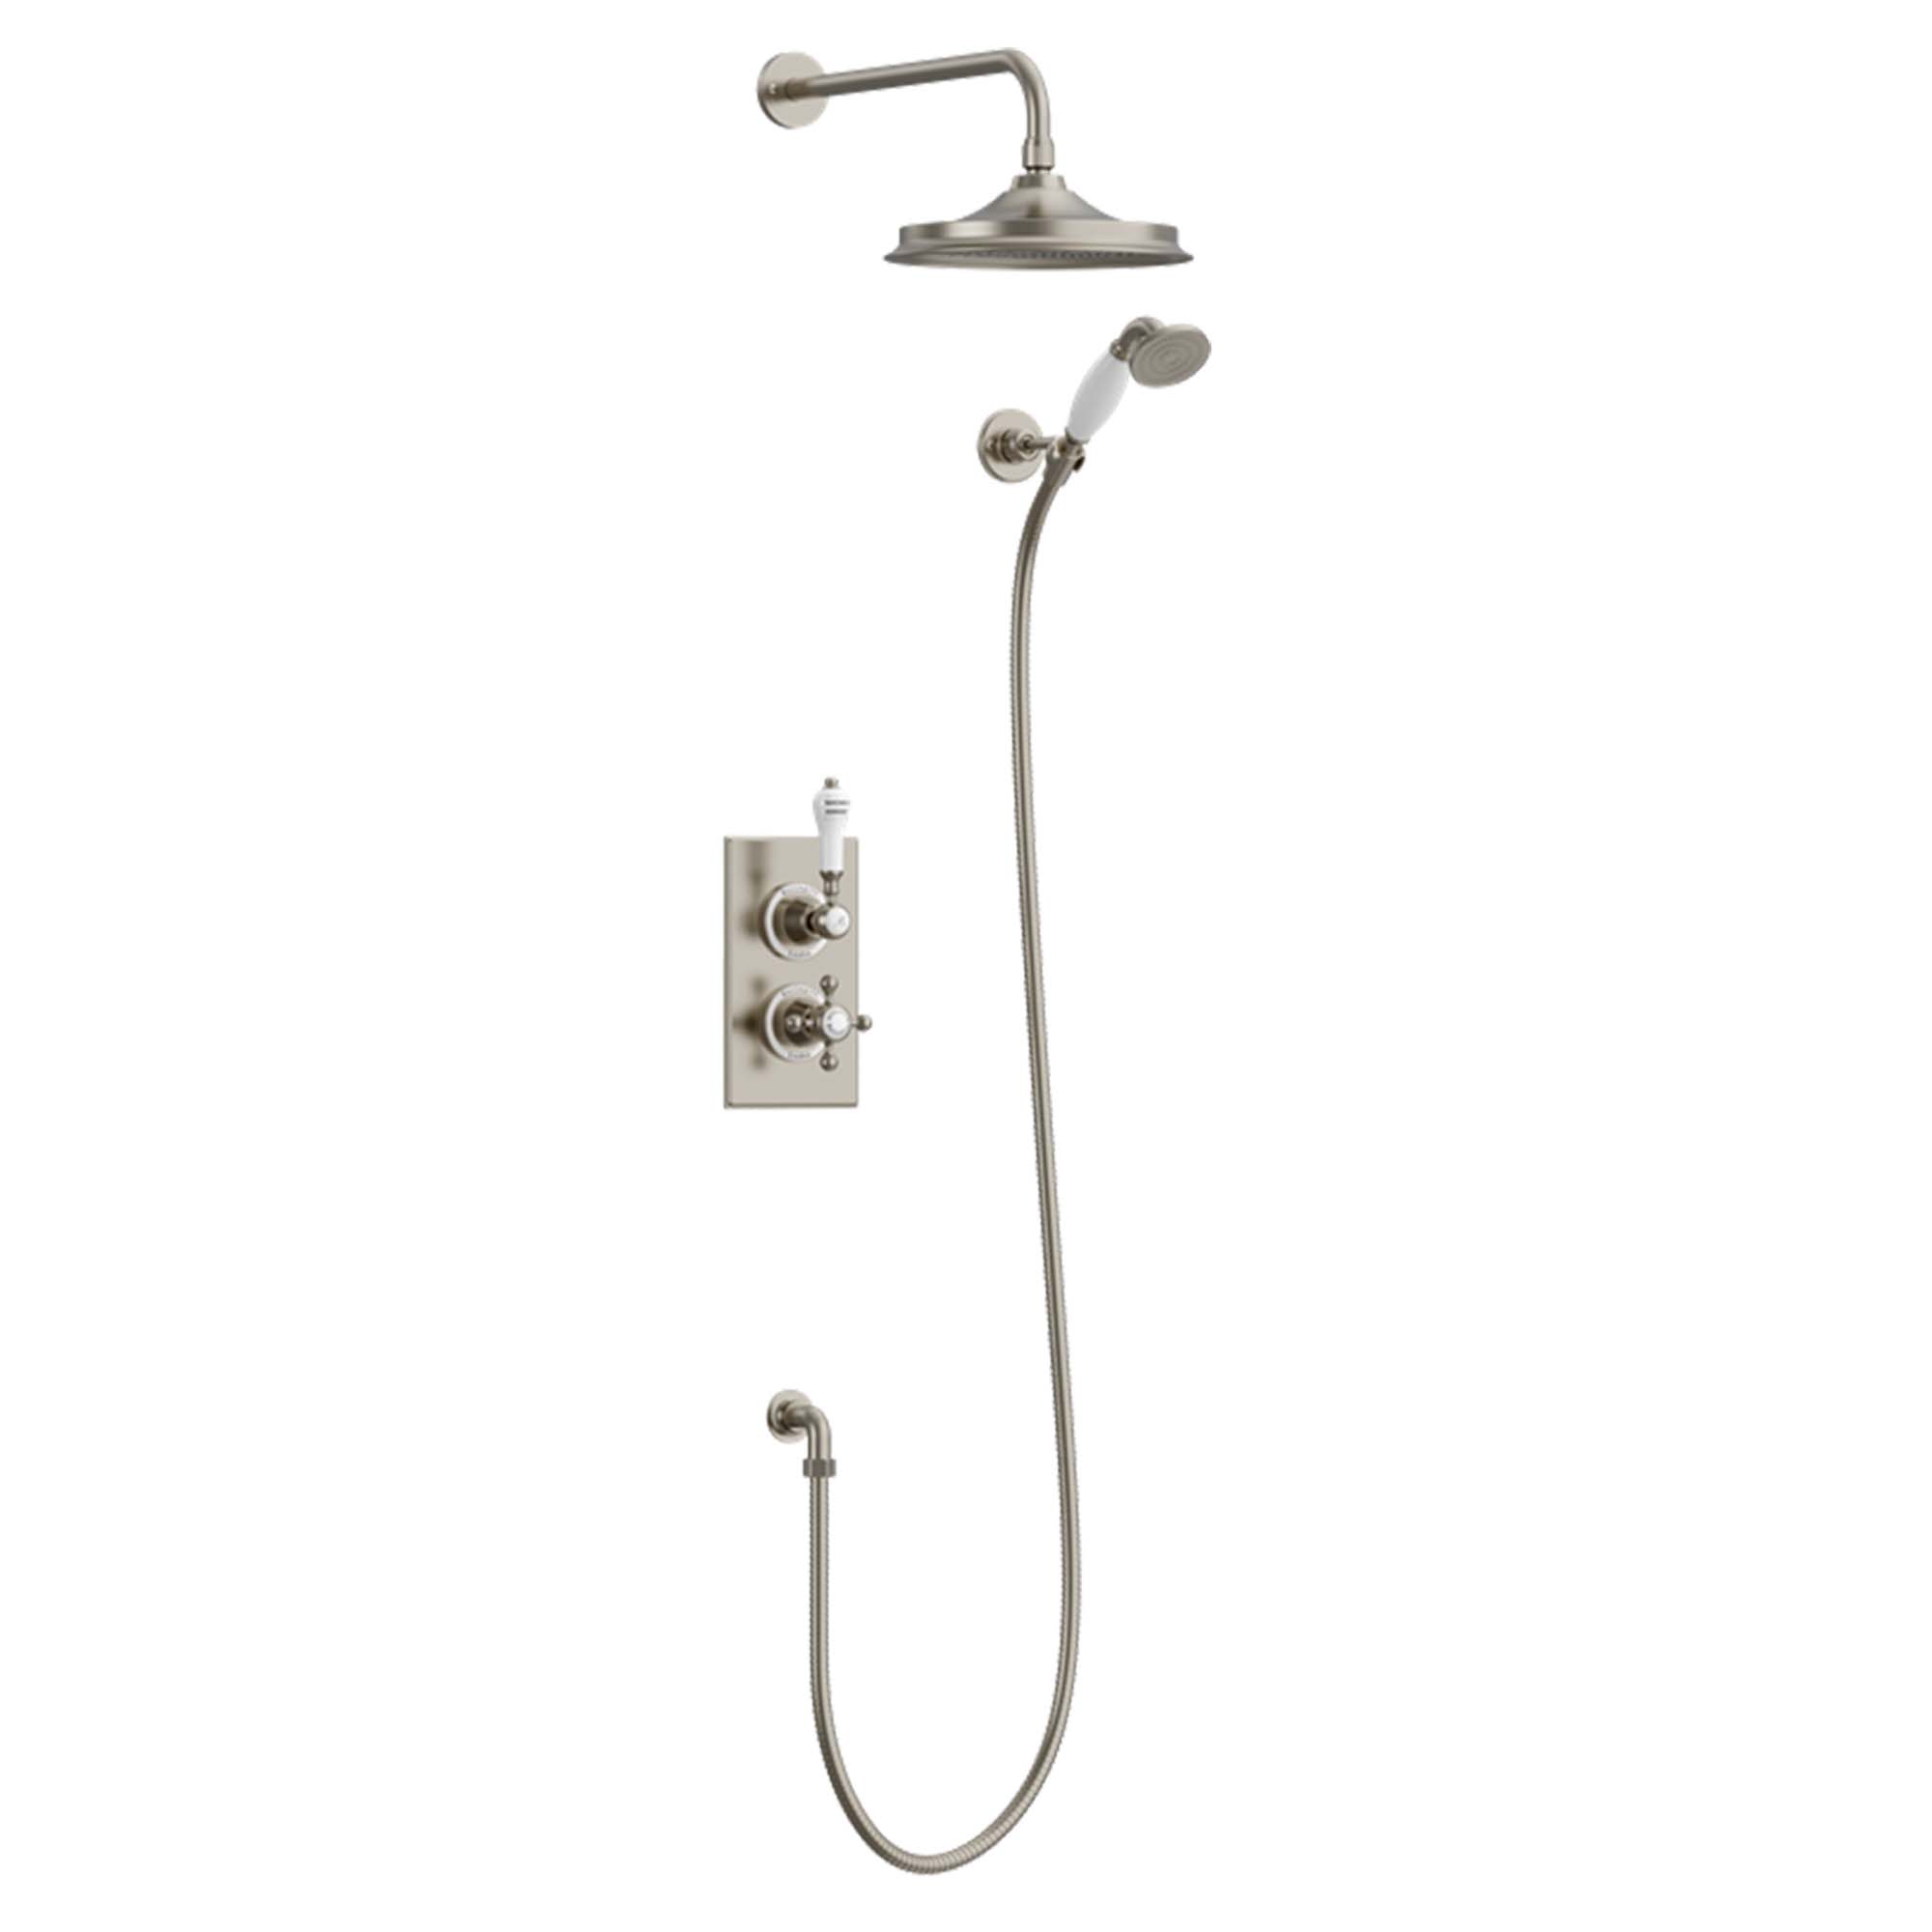 burlington trent dual outlet shower valve with shower handset and overhead brushed nickel